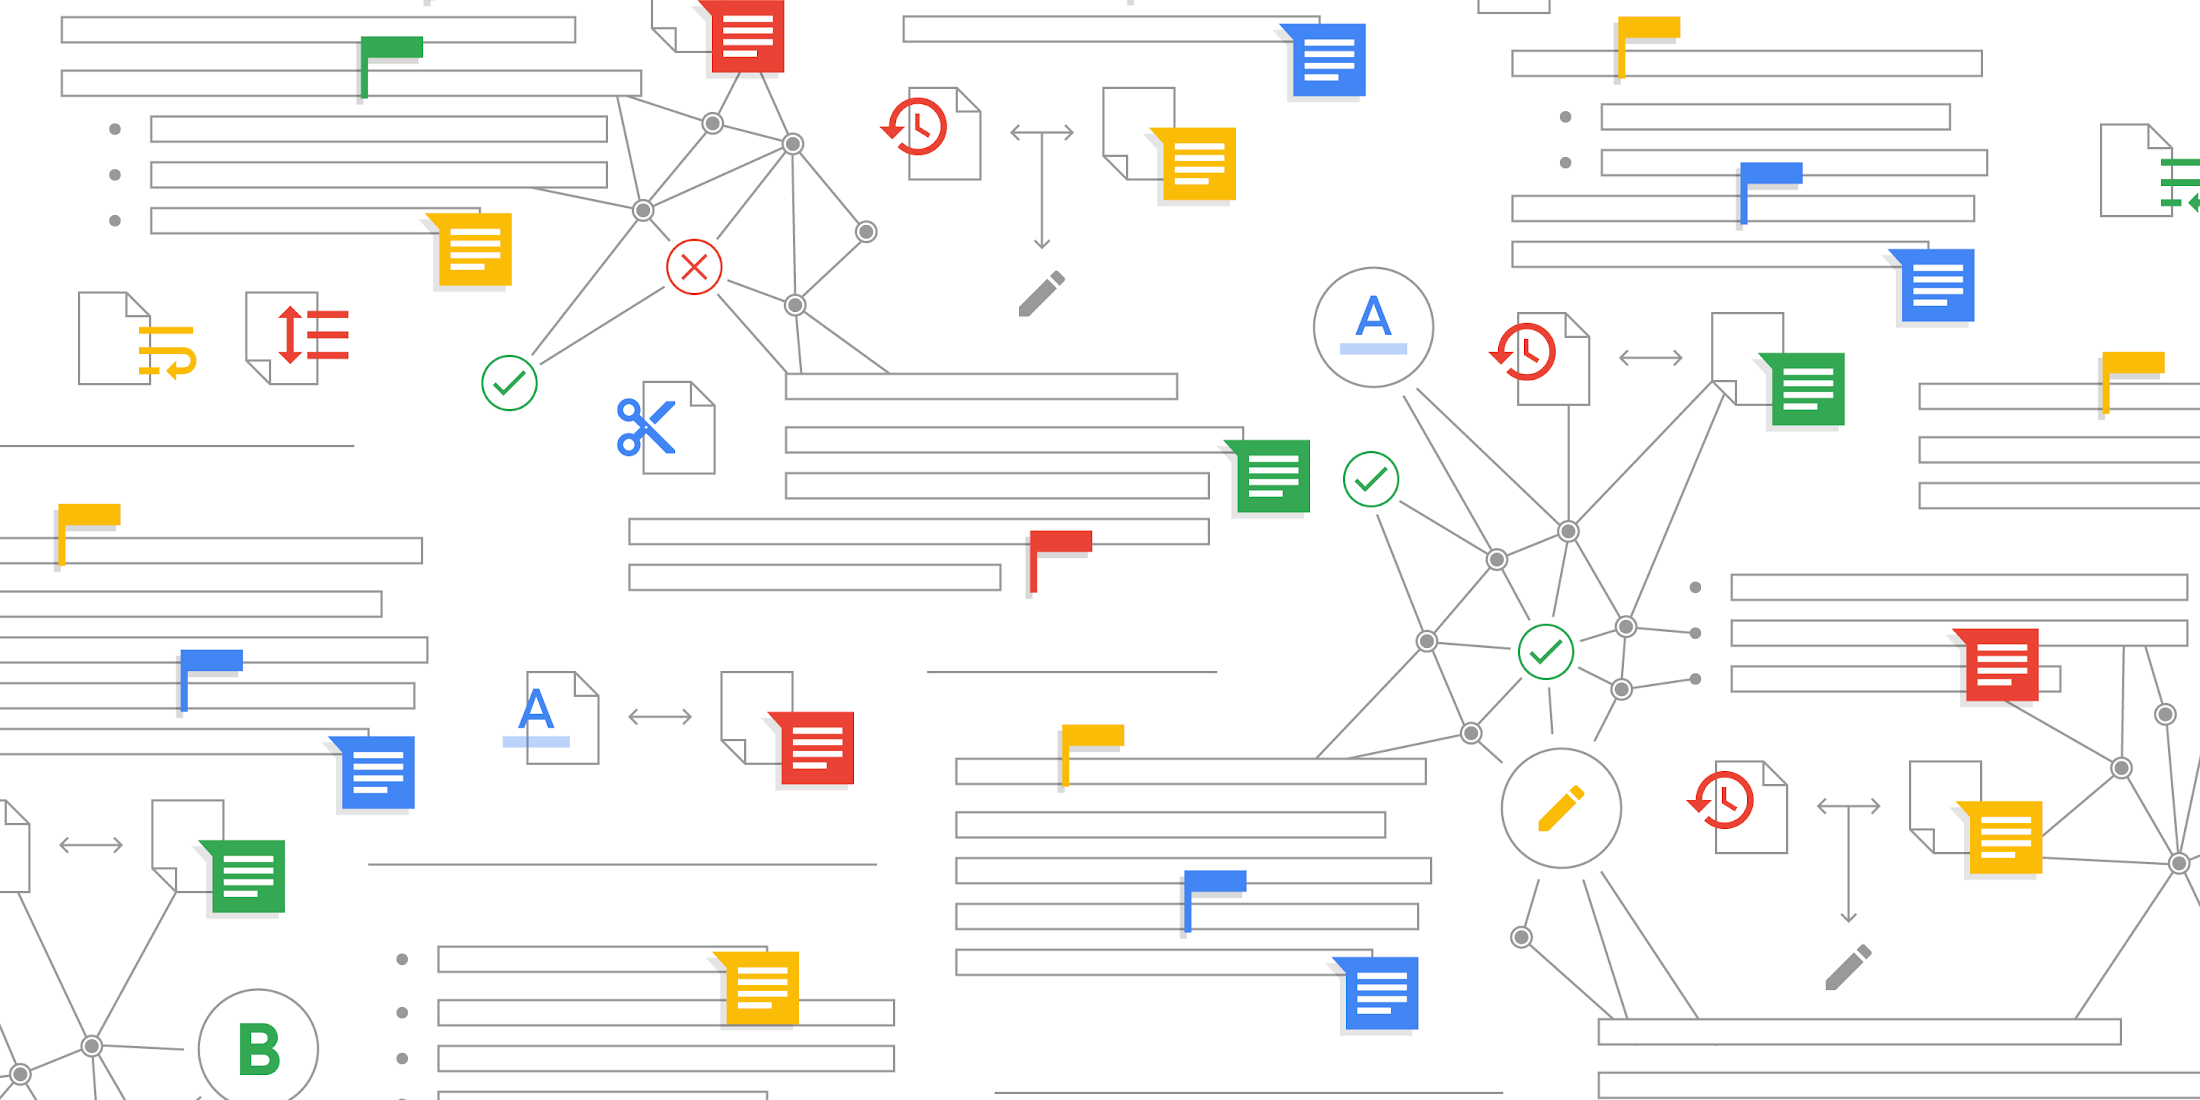 O Google Docs Smart Compose e a correção automática chegam ao G Suite for Education